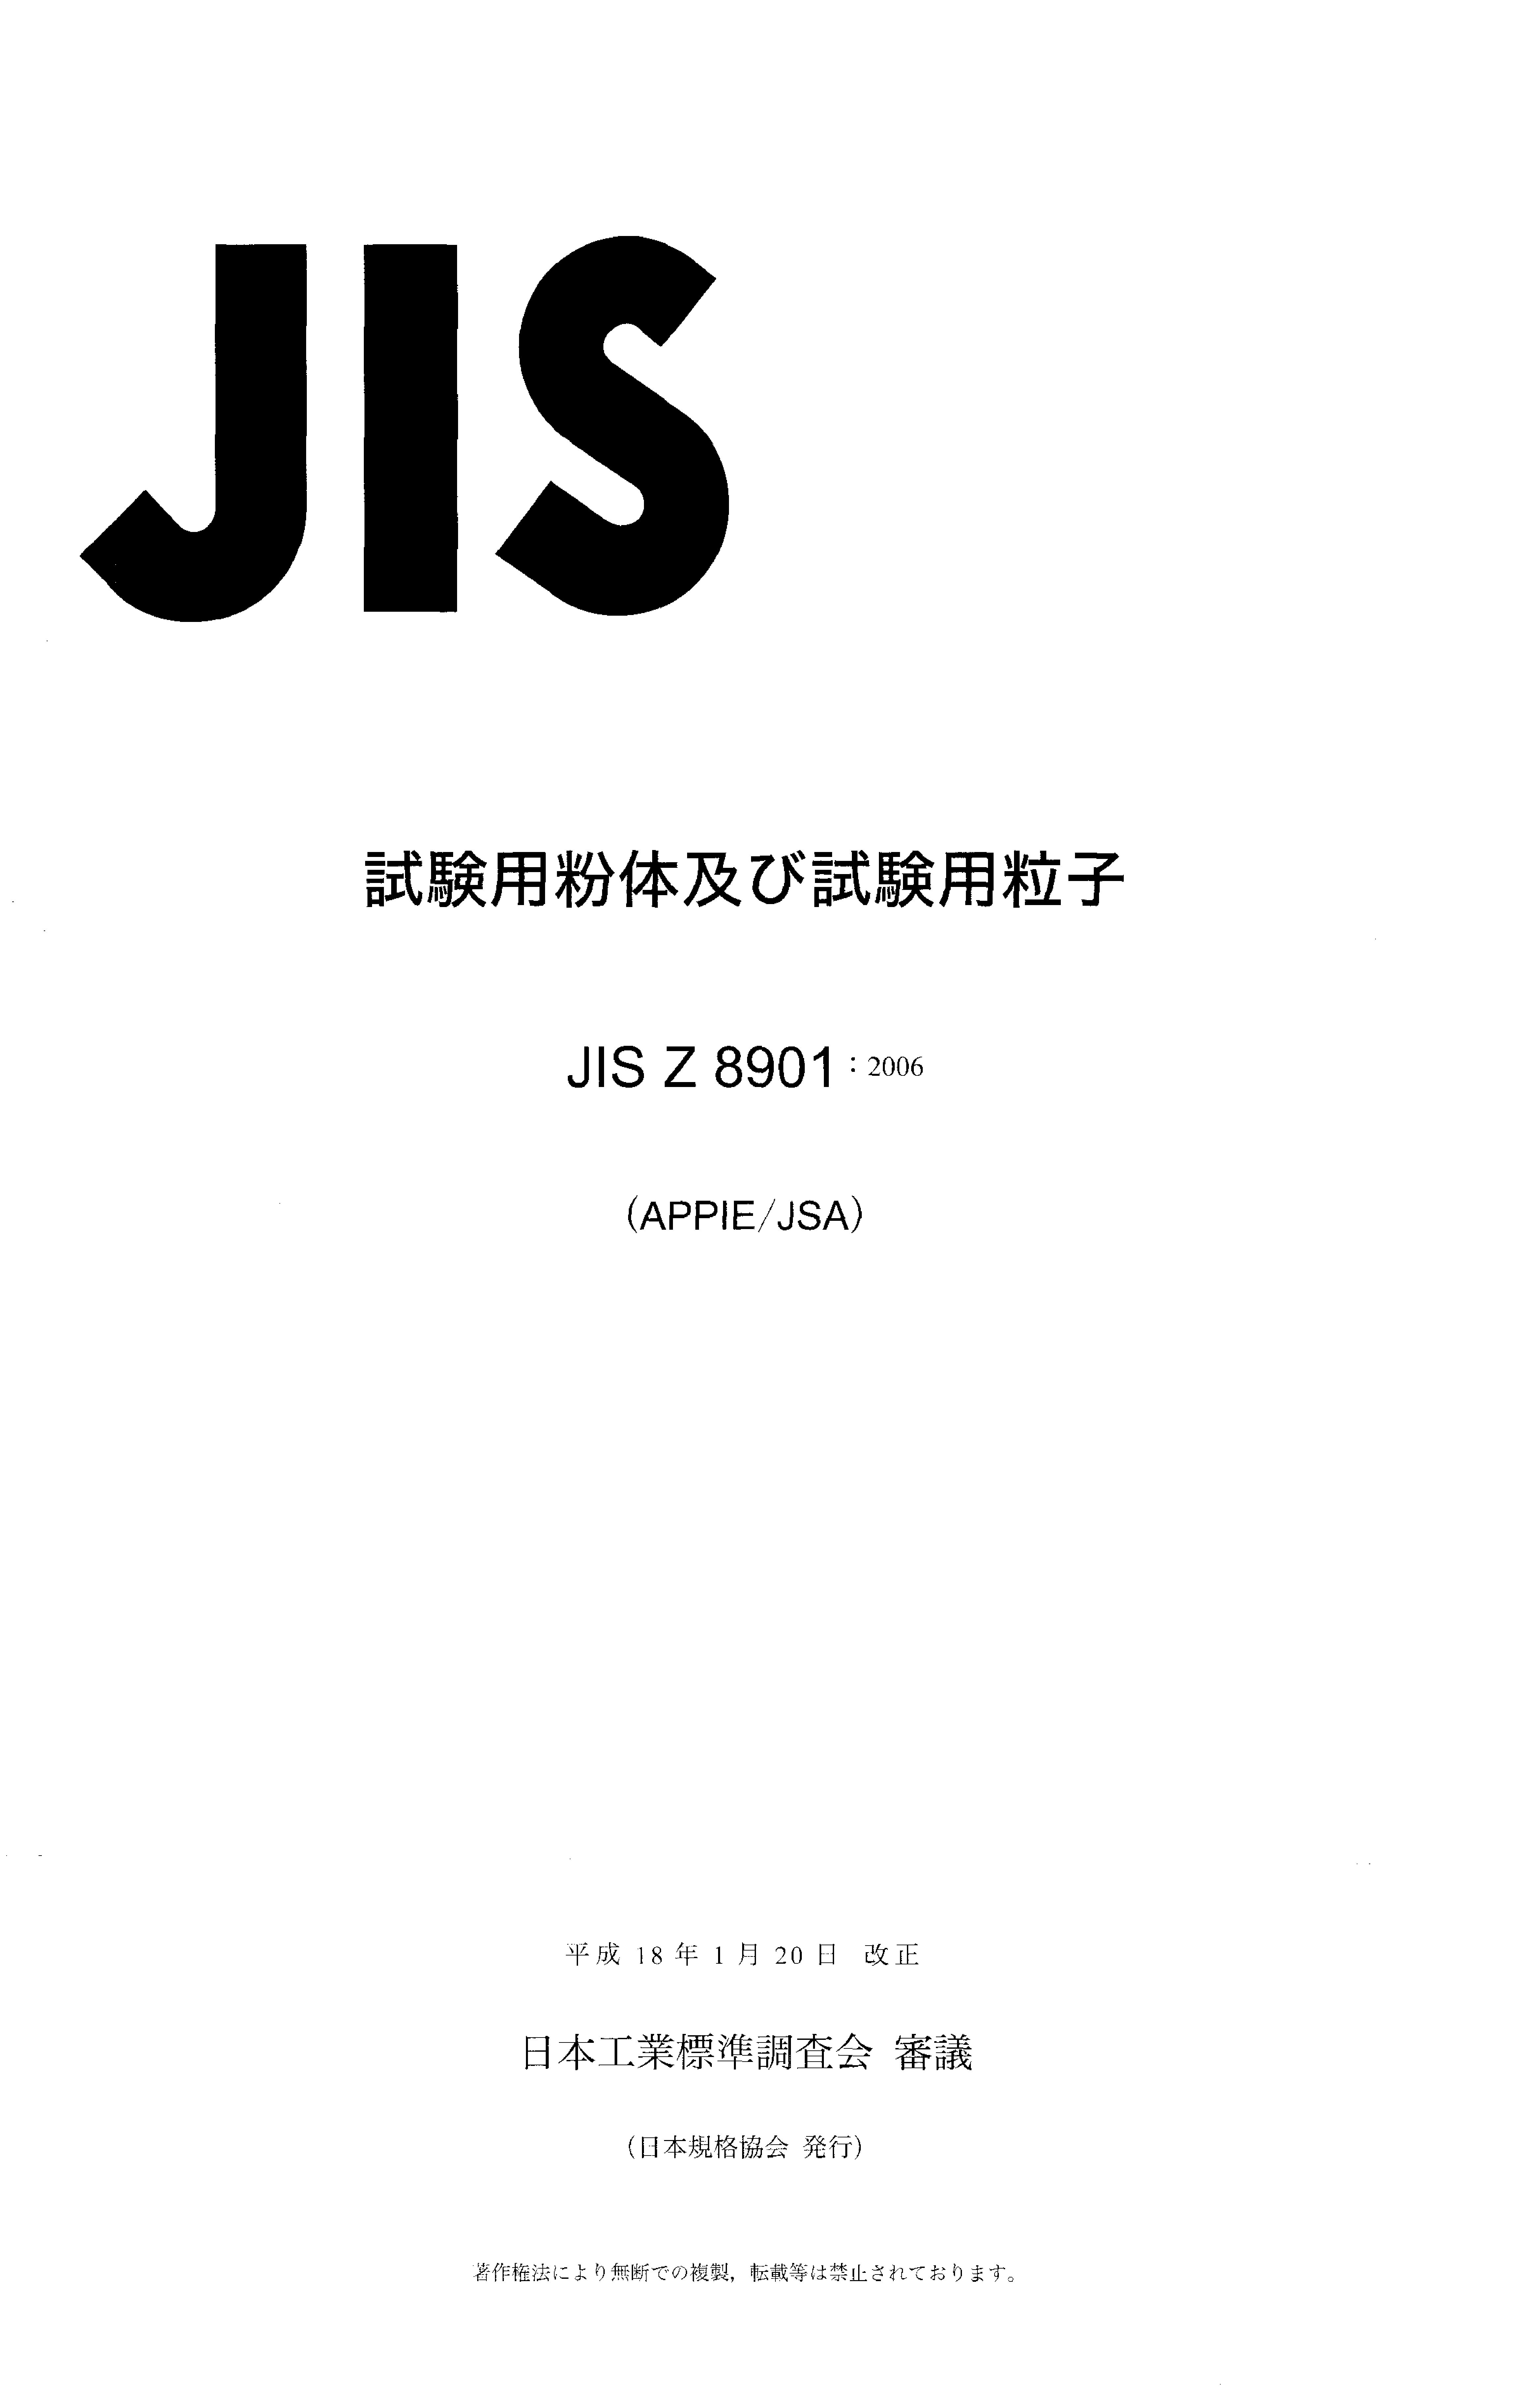 JIS Z 8901:2006